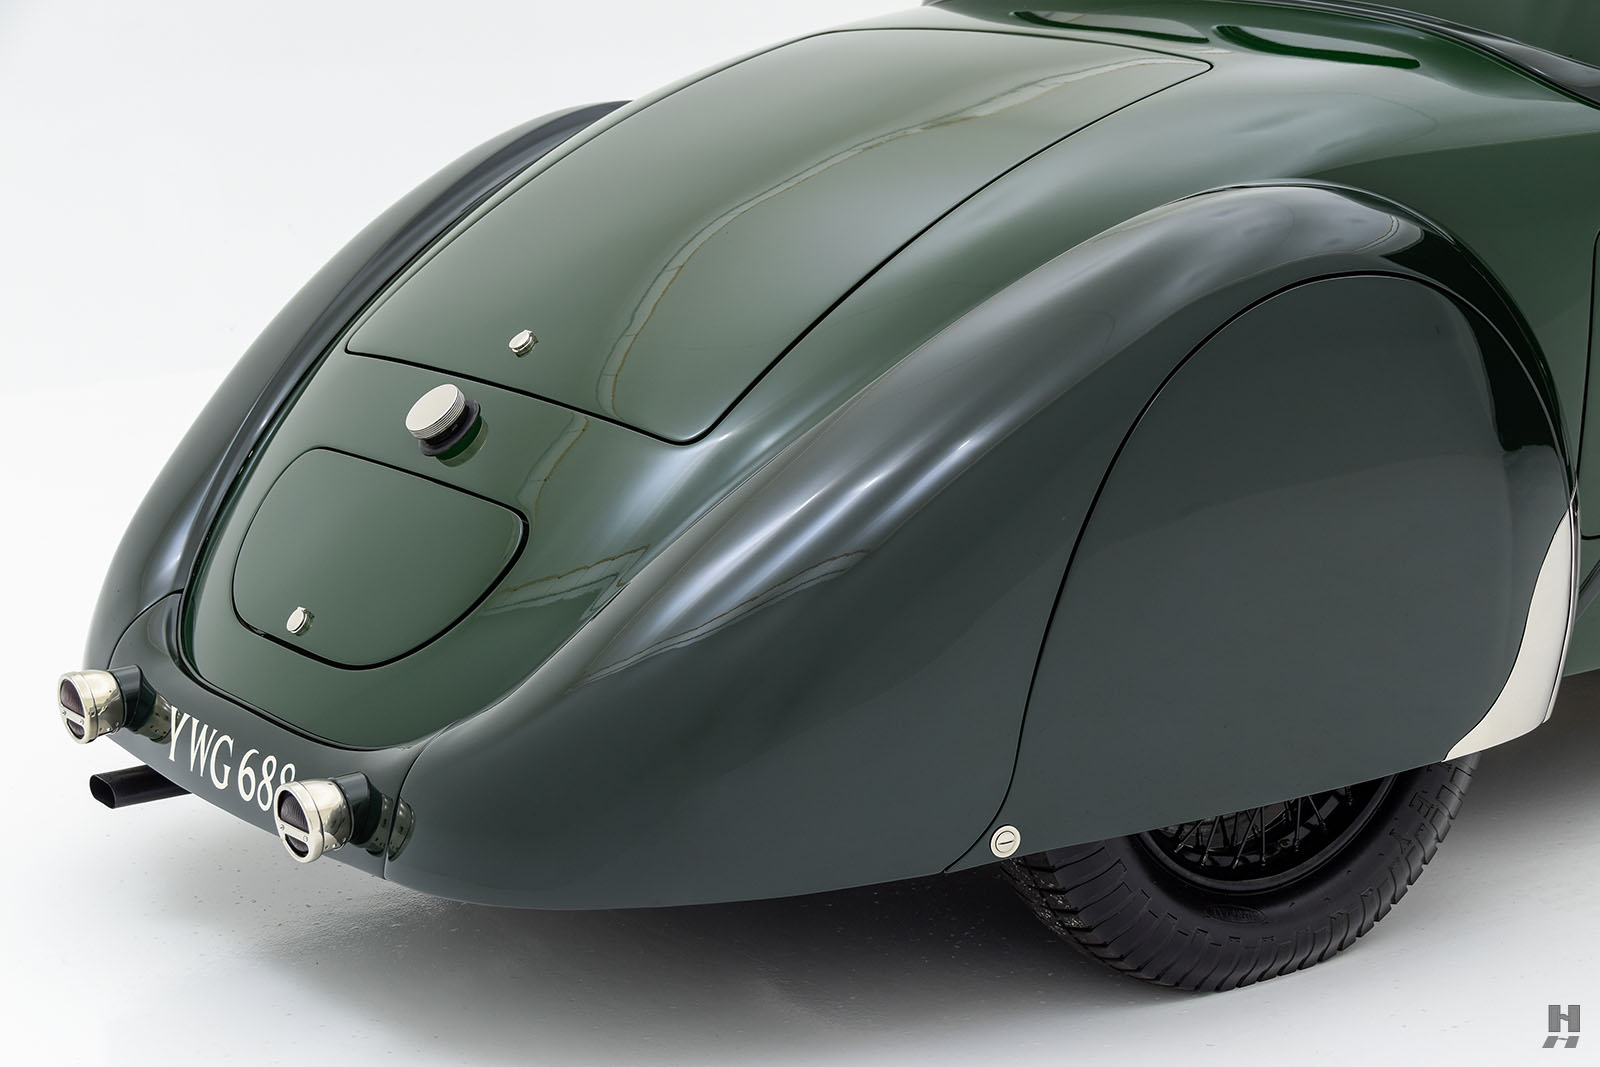 1936 bugatti type 57 ventoux